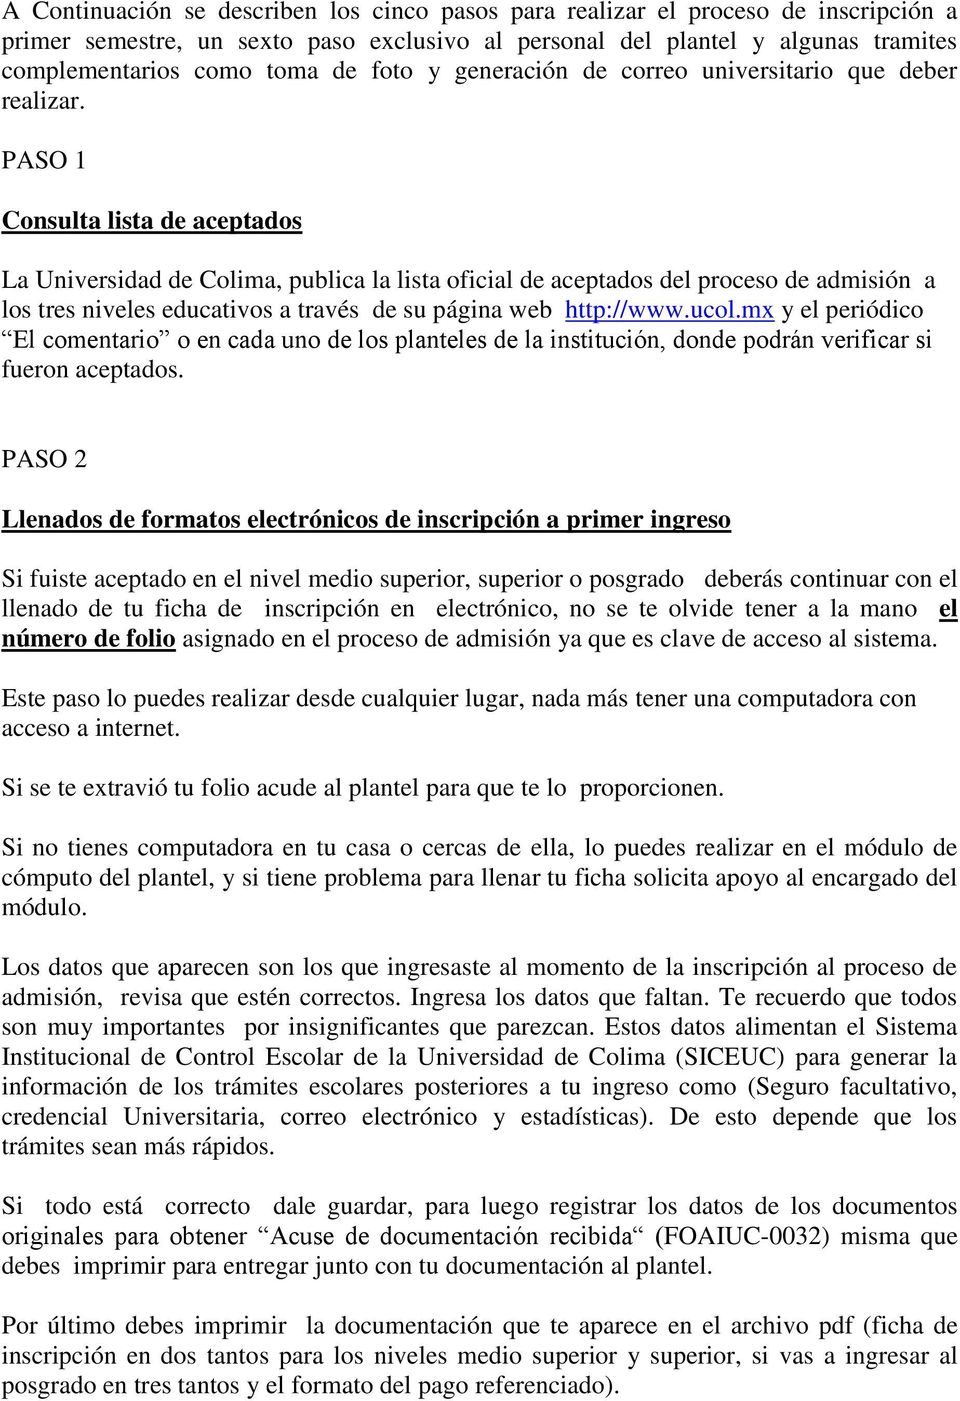 PASO 1 Consulta lista de aceptados La Universidad de Colima, publica la lista oficial de aceptados del proceso de admisión a los tres niveles educativos a través de su página web http://www.ucol.